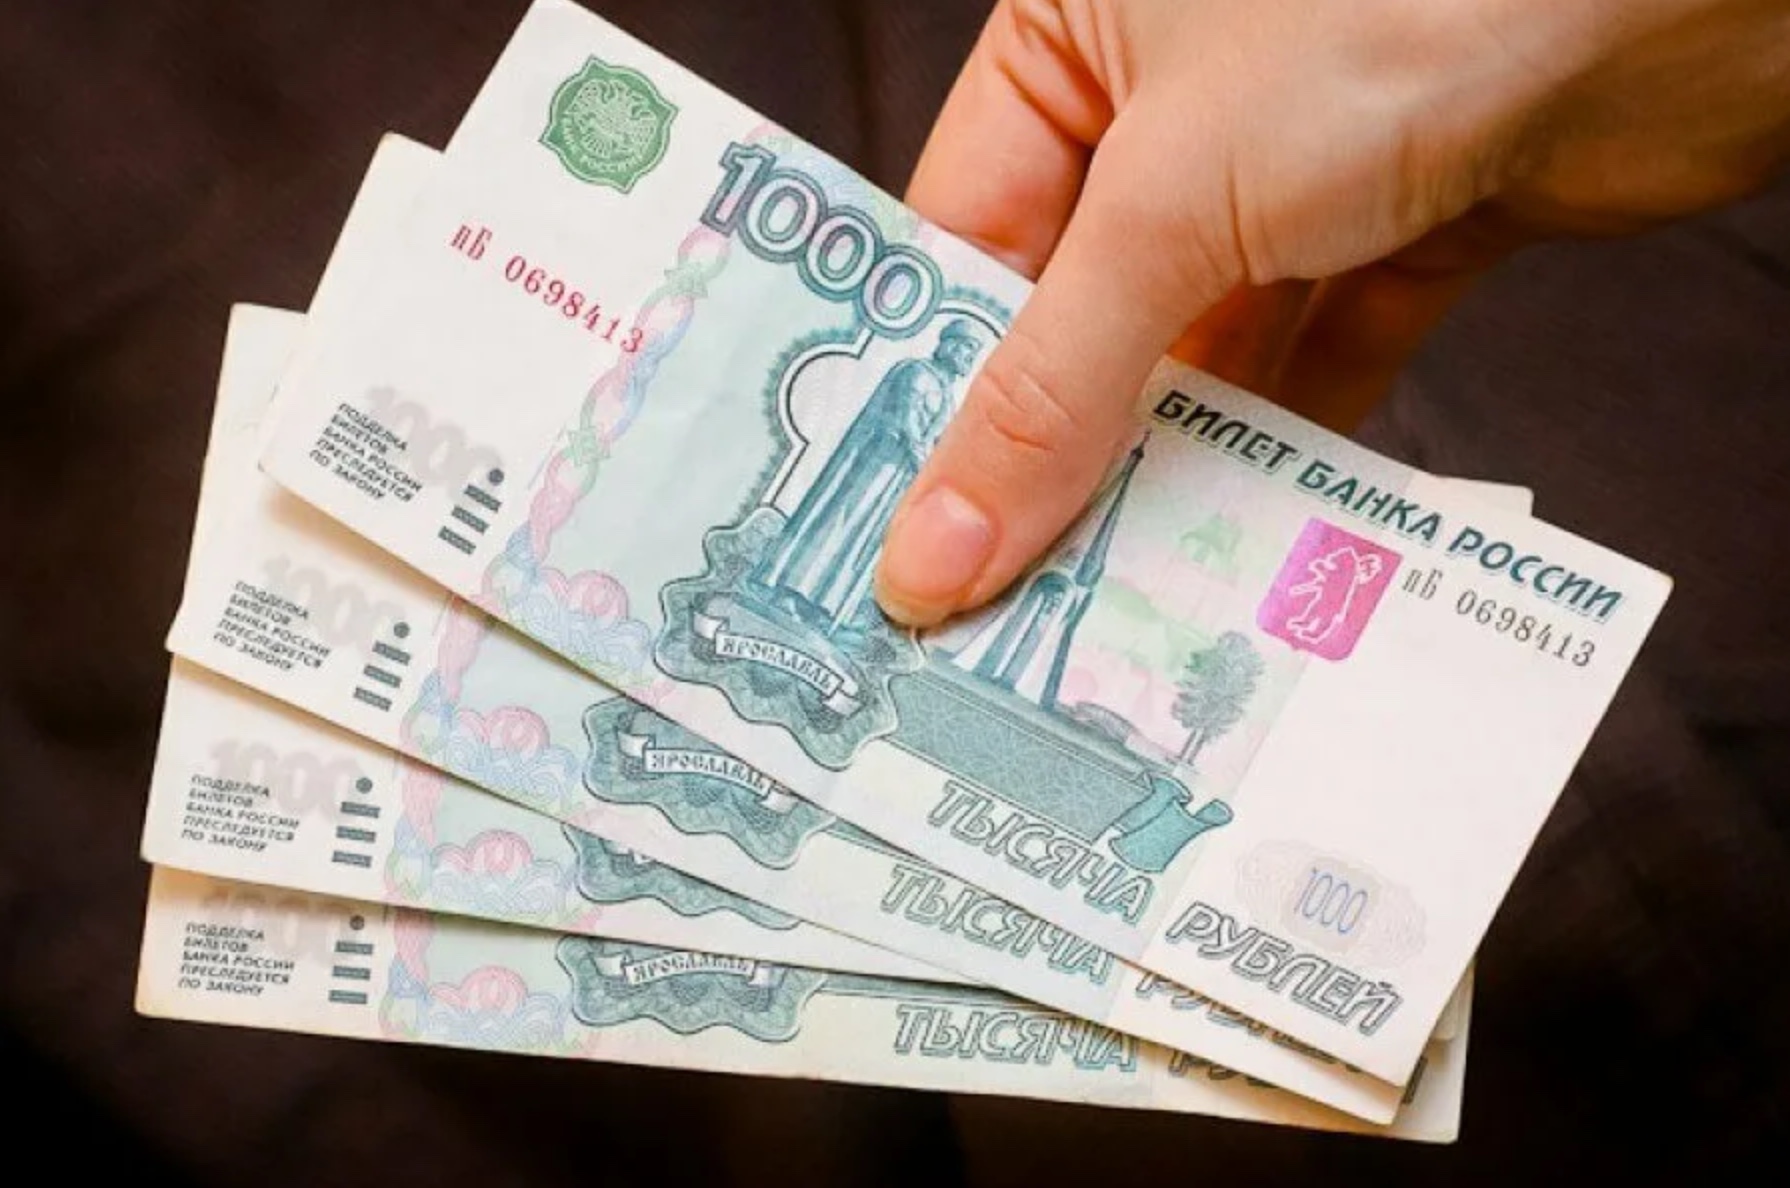 Разовая материальная помощь в размере 4000 рублей: как получить